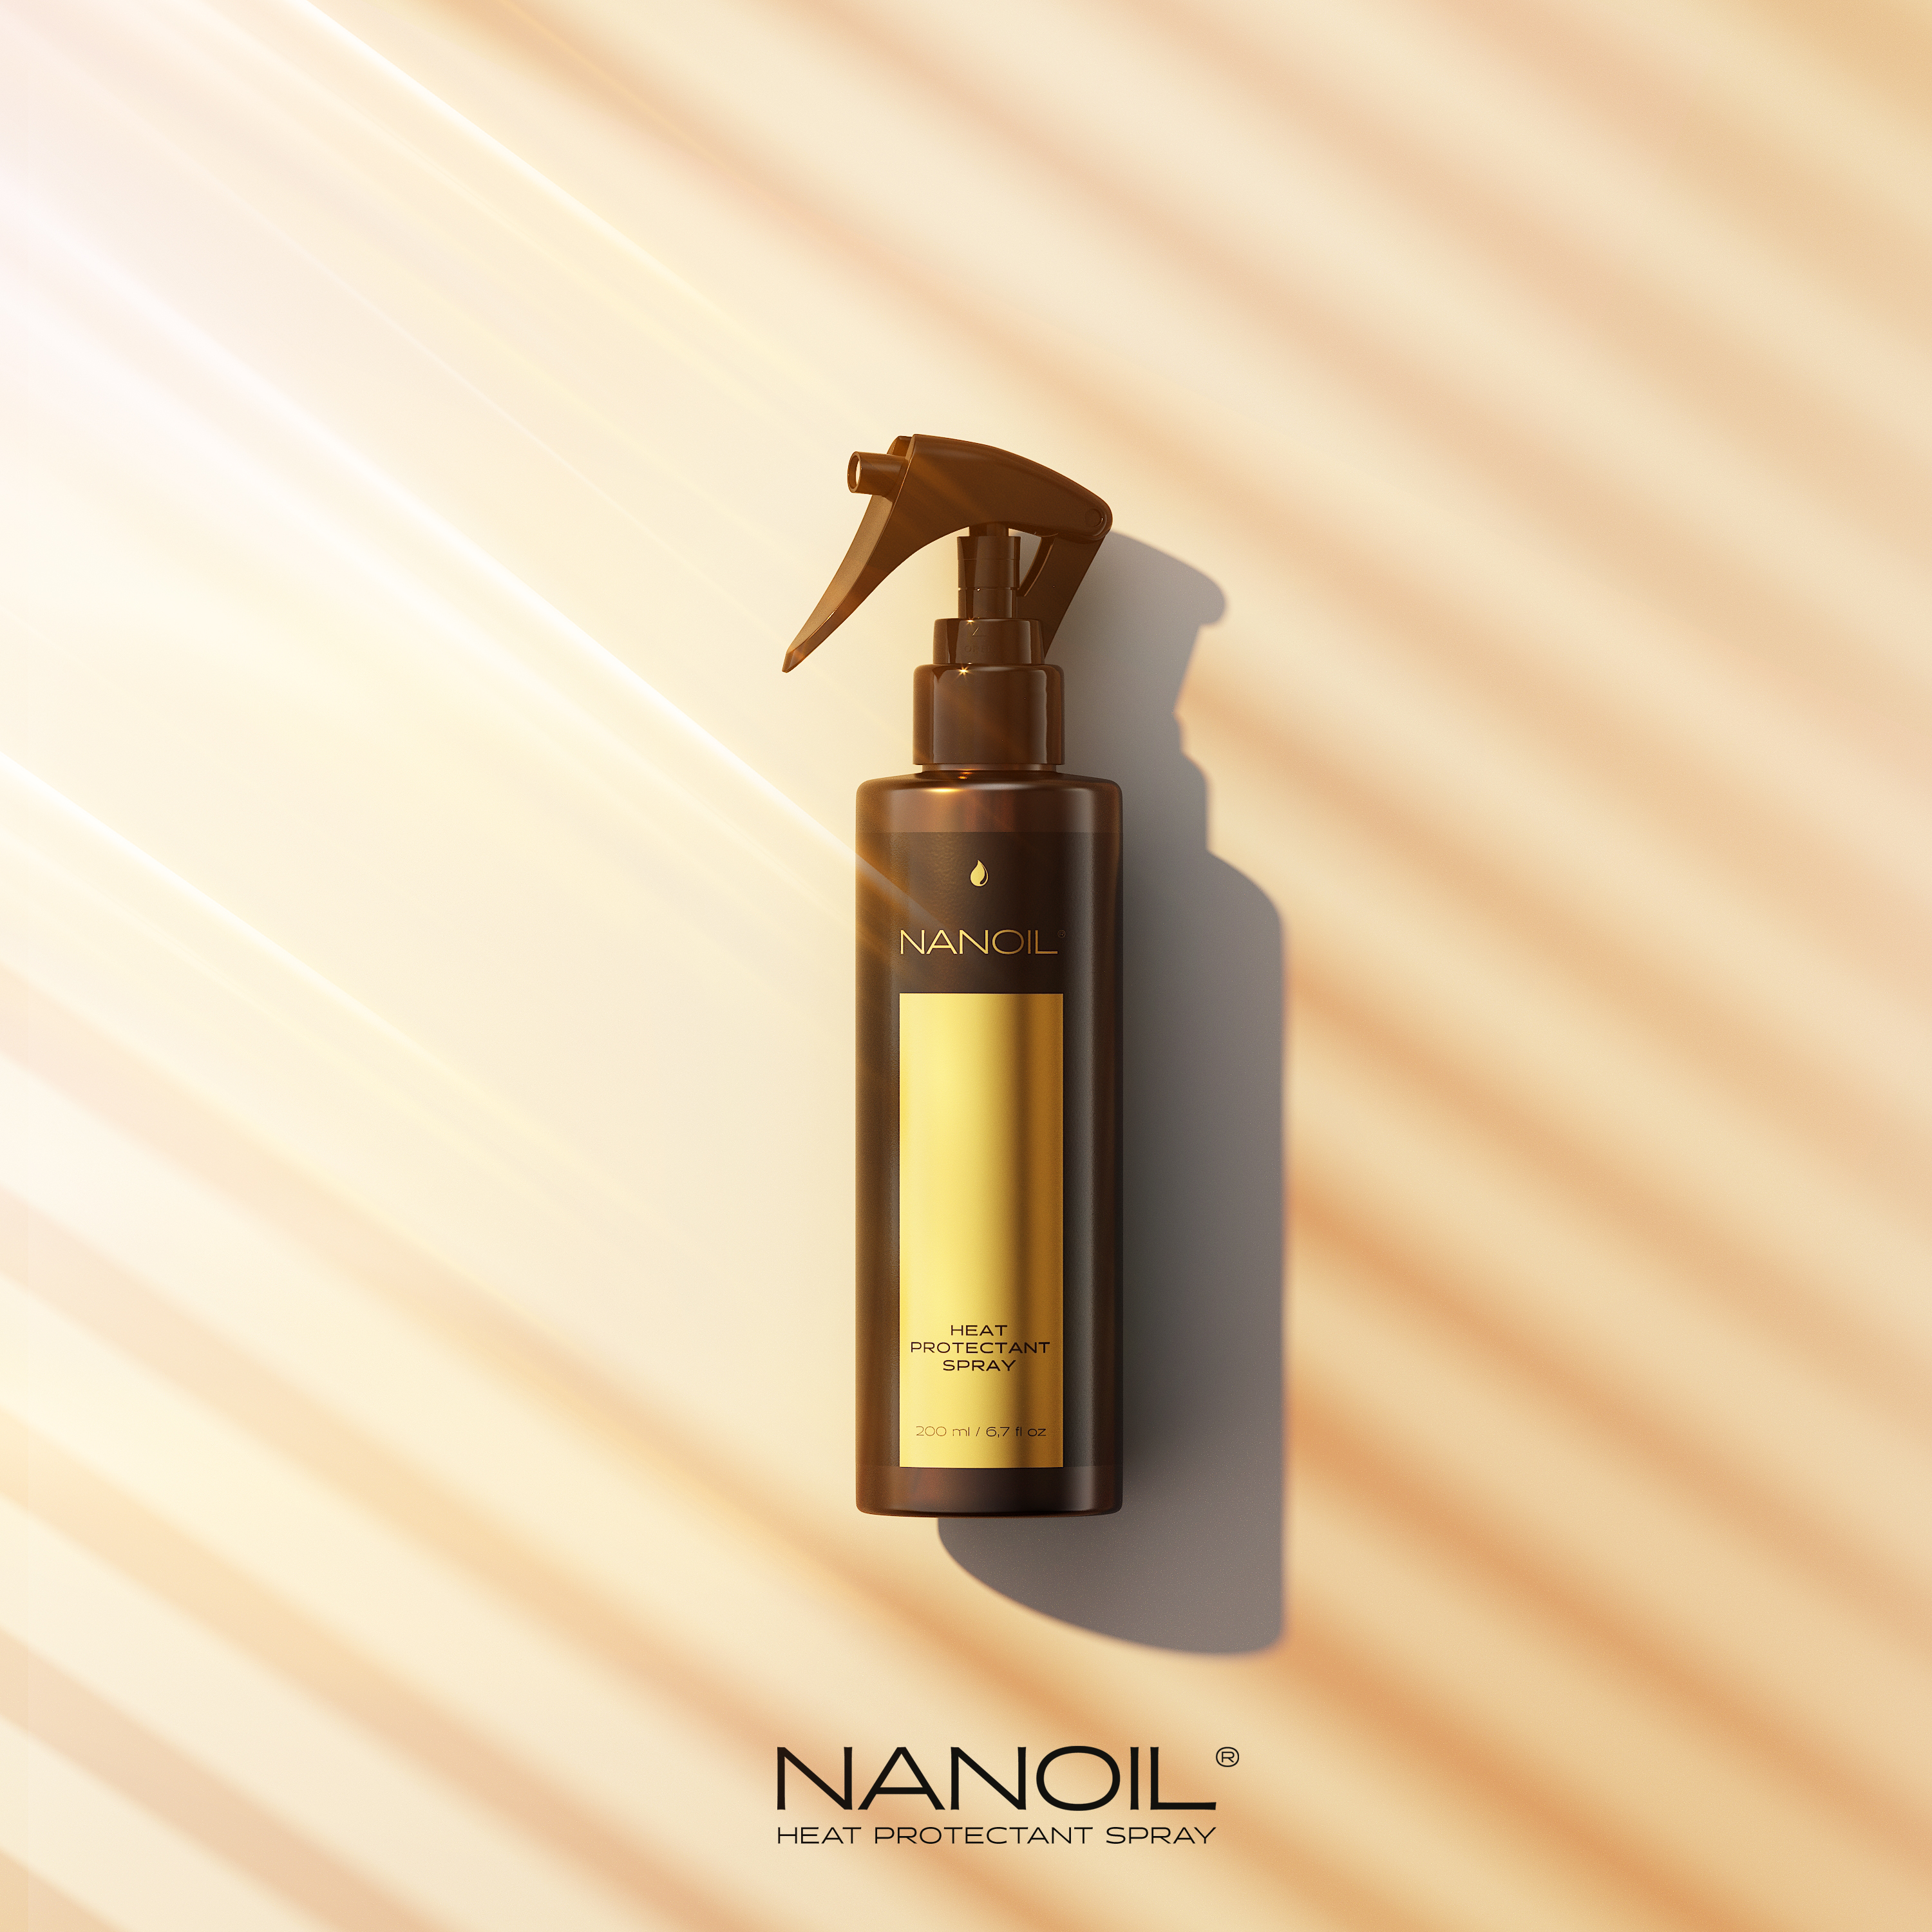 Mój ulubiony kosmetyk temoochronny – spray od Nanoil